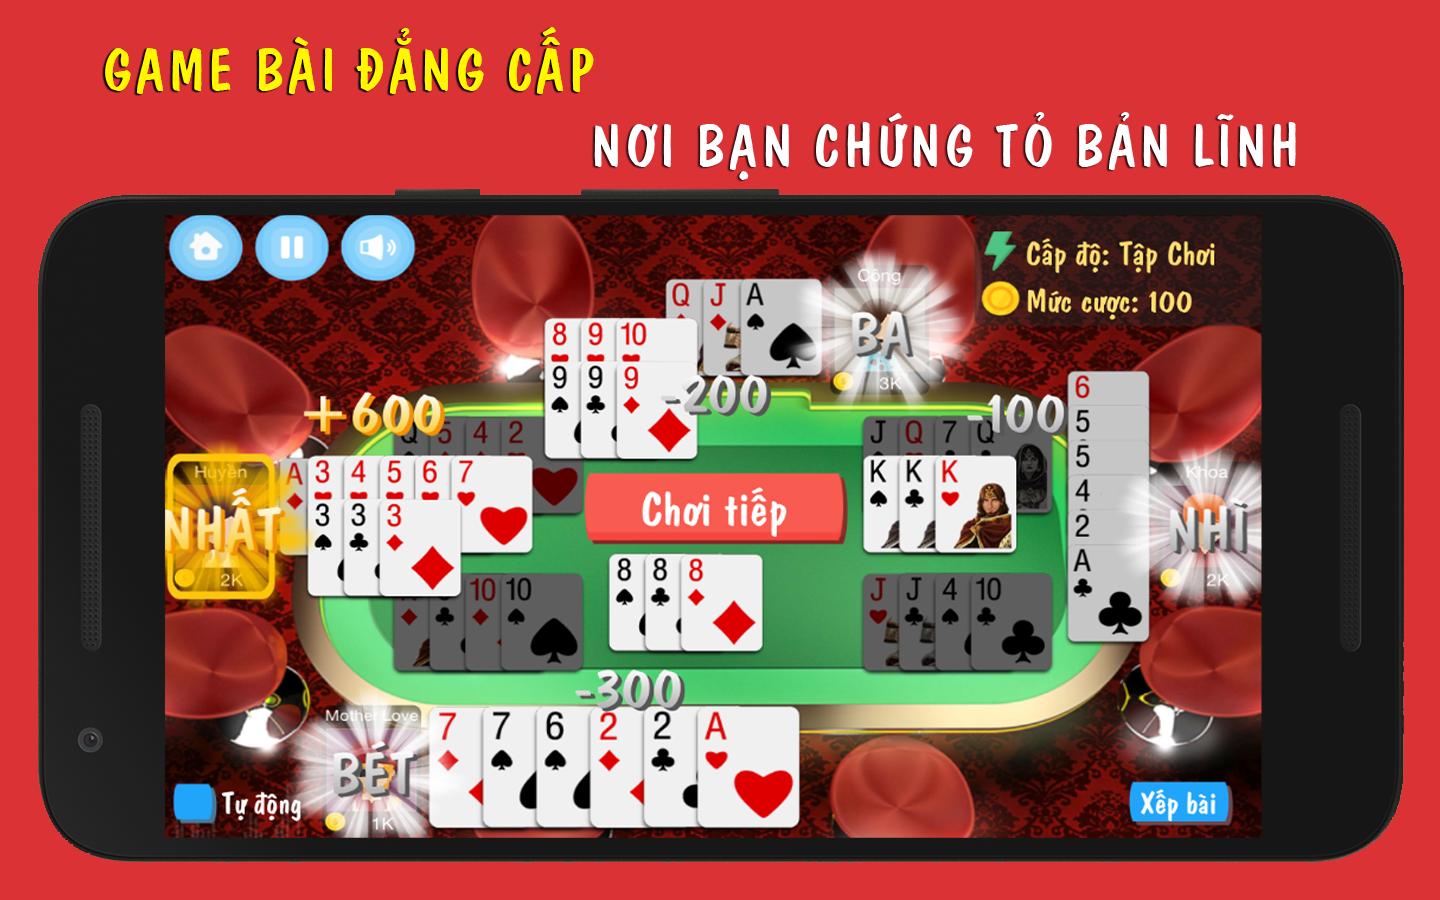 Phỏm là một trò chơi bài truyền thống và đã phát triển thành một trong những trò chơi phổ biến nhất ở Việt Nam